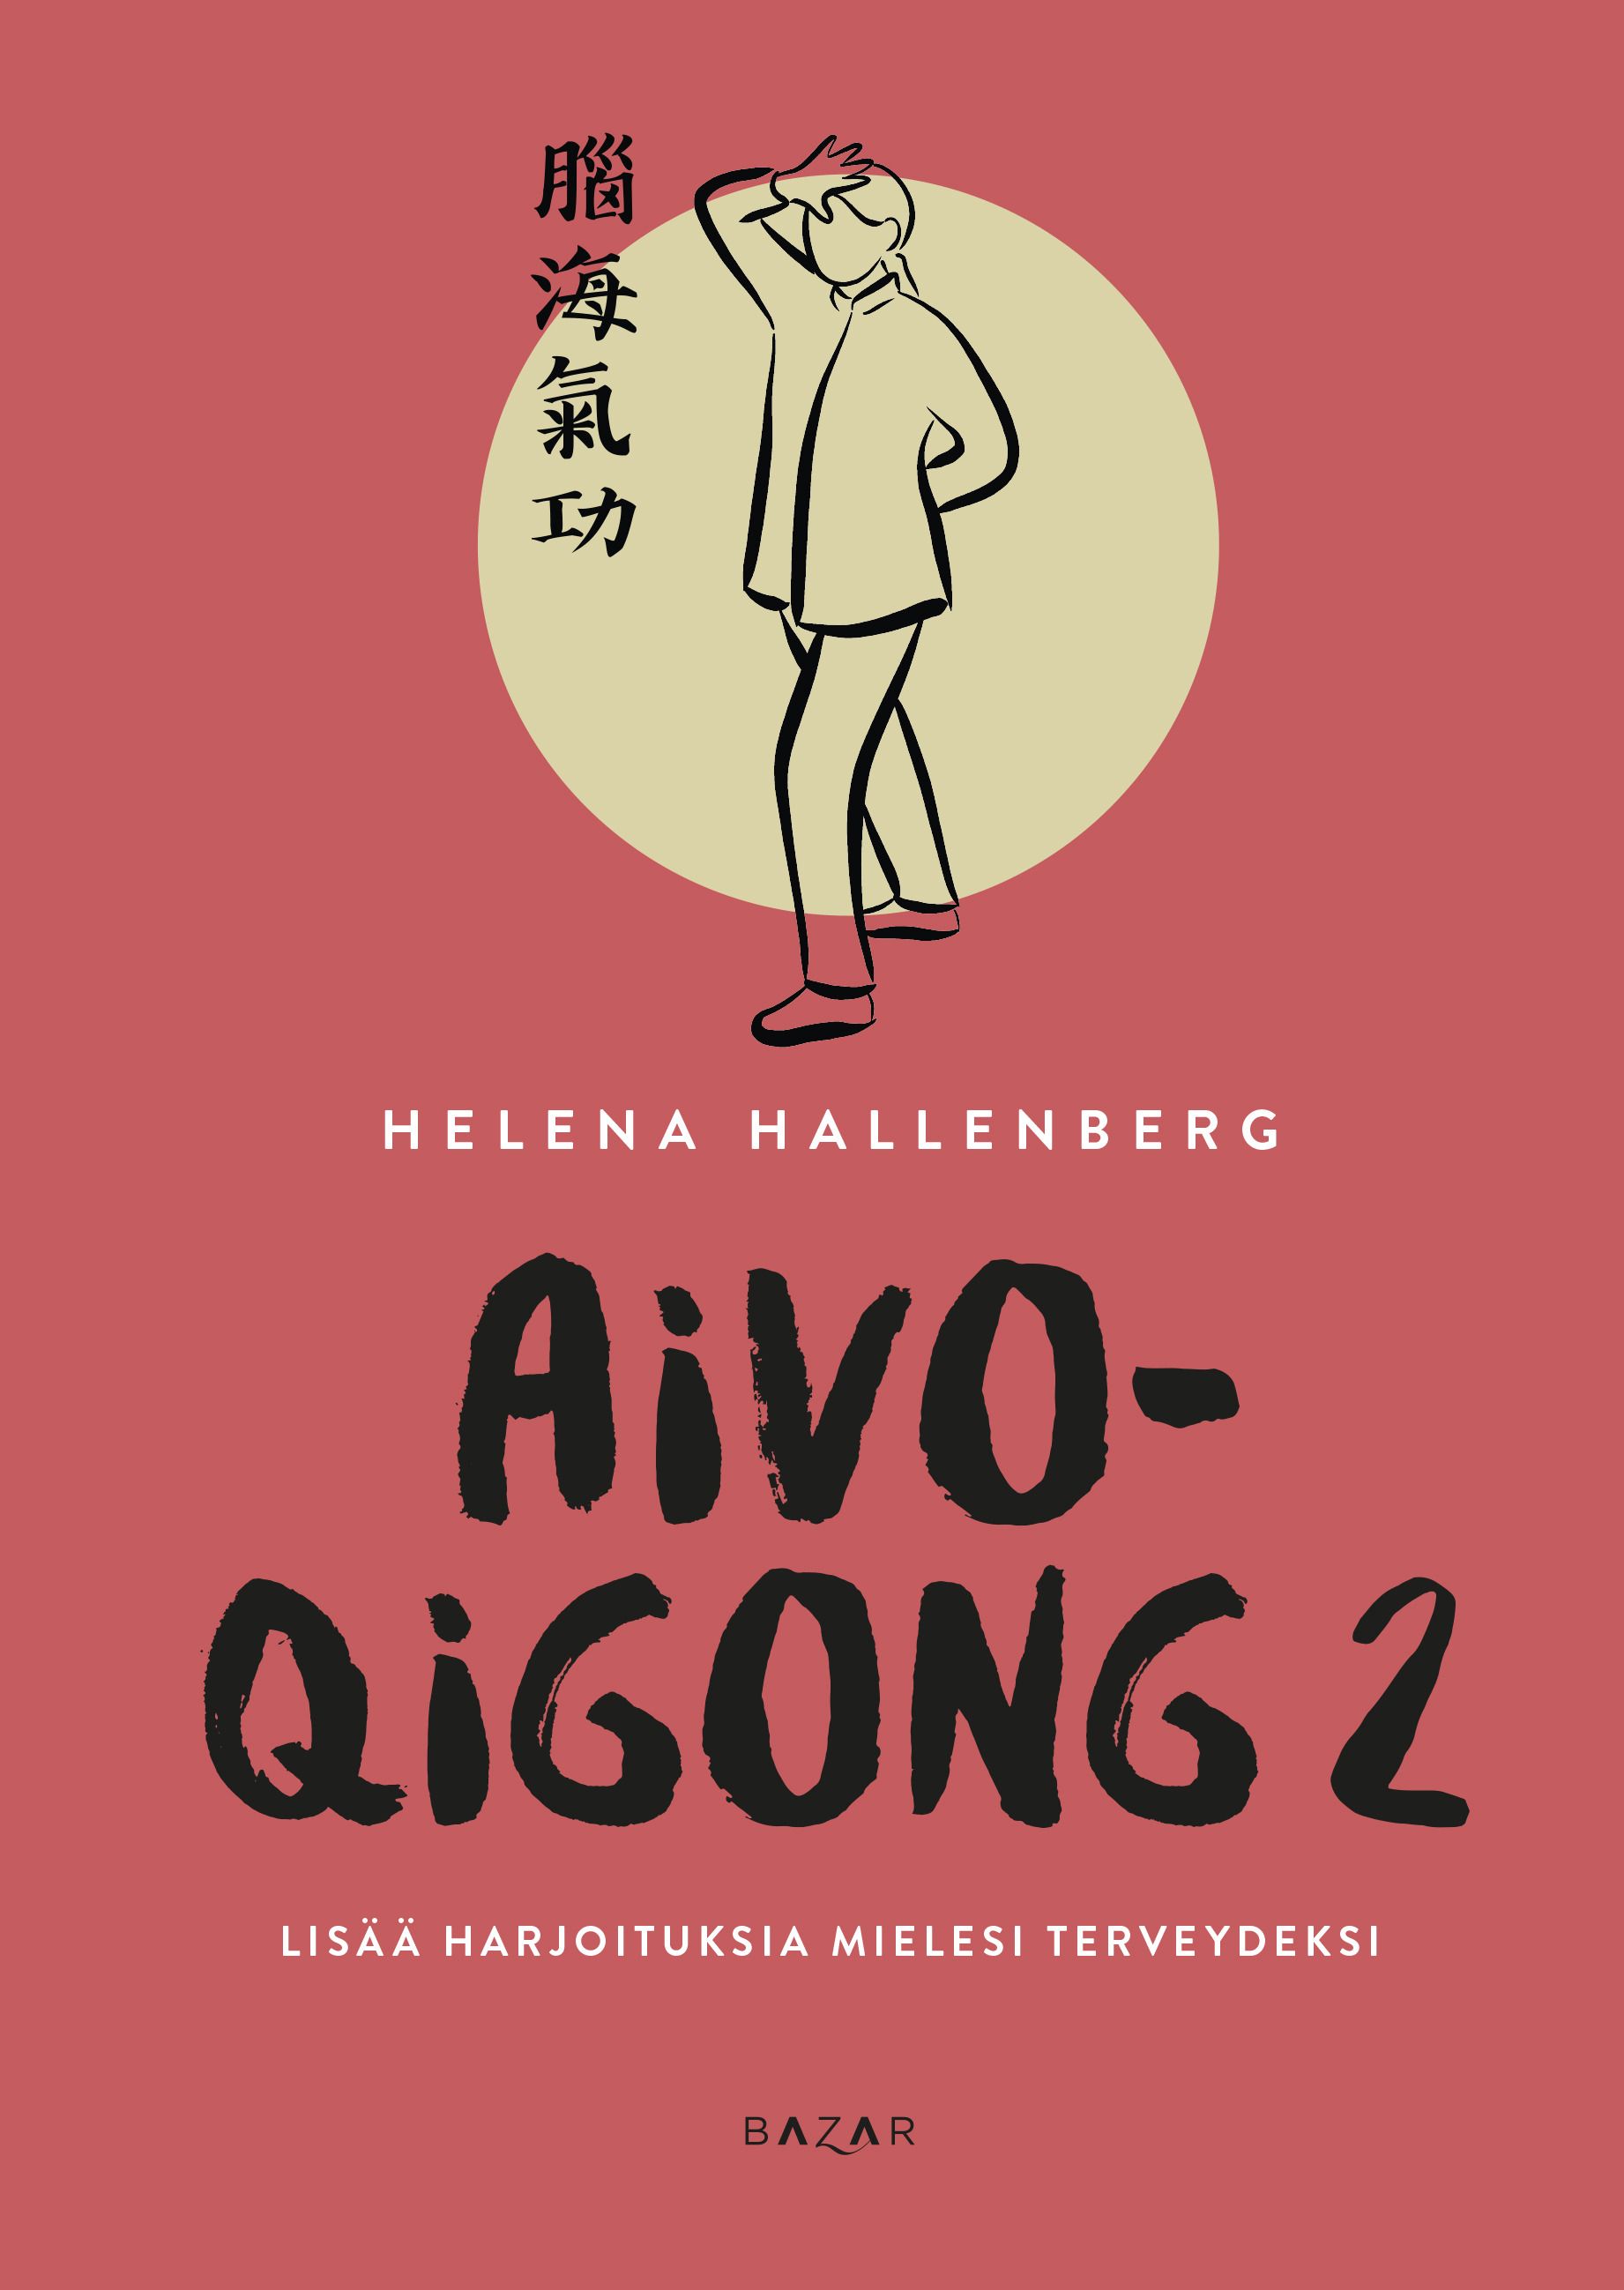 Helena Hallenberg : Aivo-qigong 2